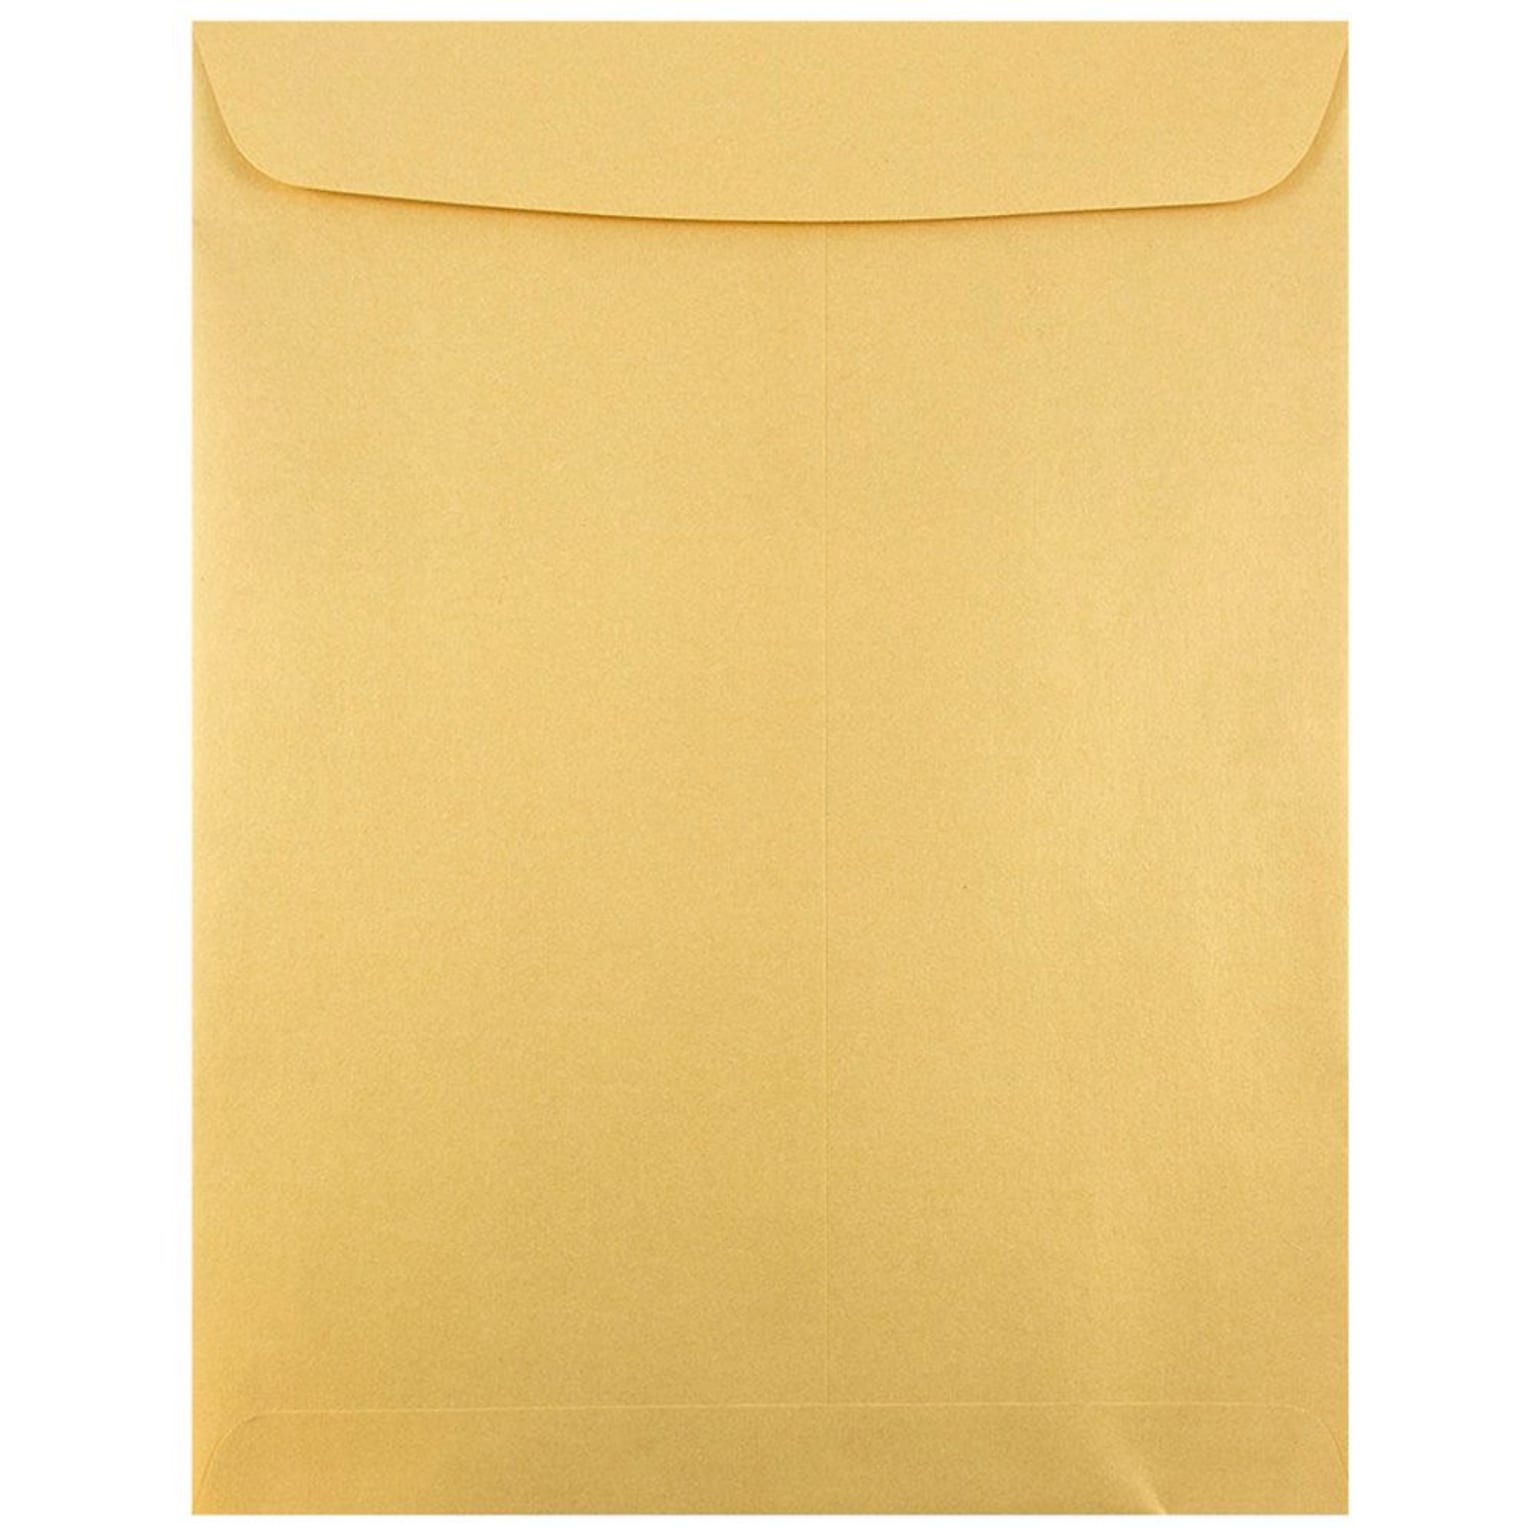 JAM Paper 10 x 13 Open End Catalog Metallic Envelopes, Stardream Gold, 25/Pack (v018325a)